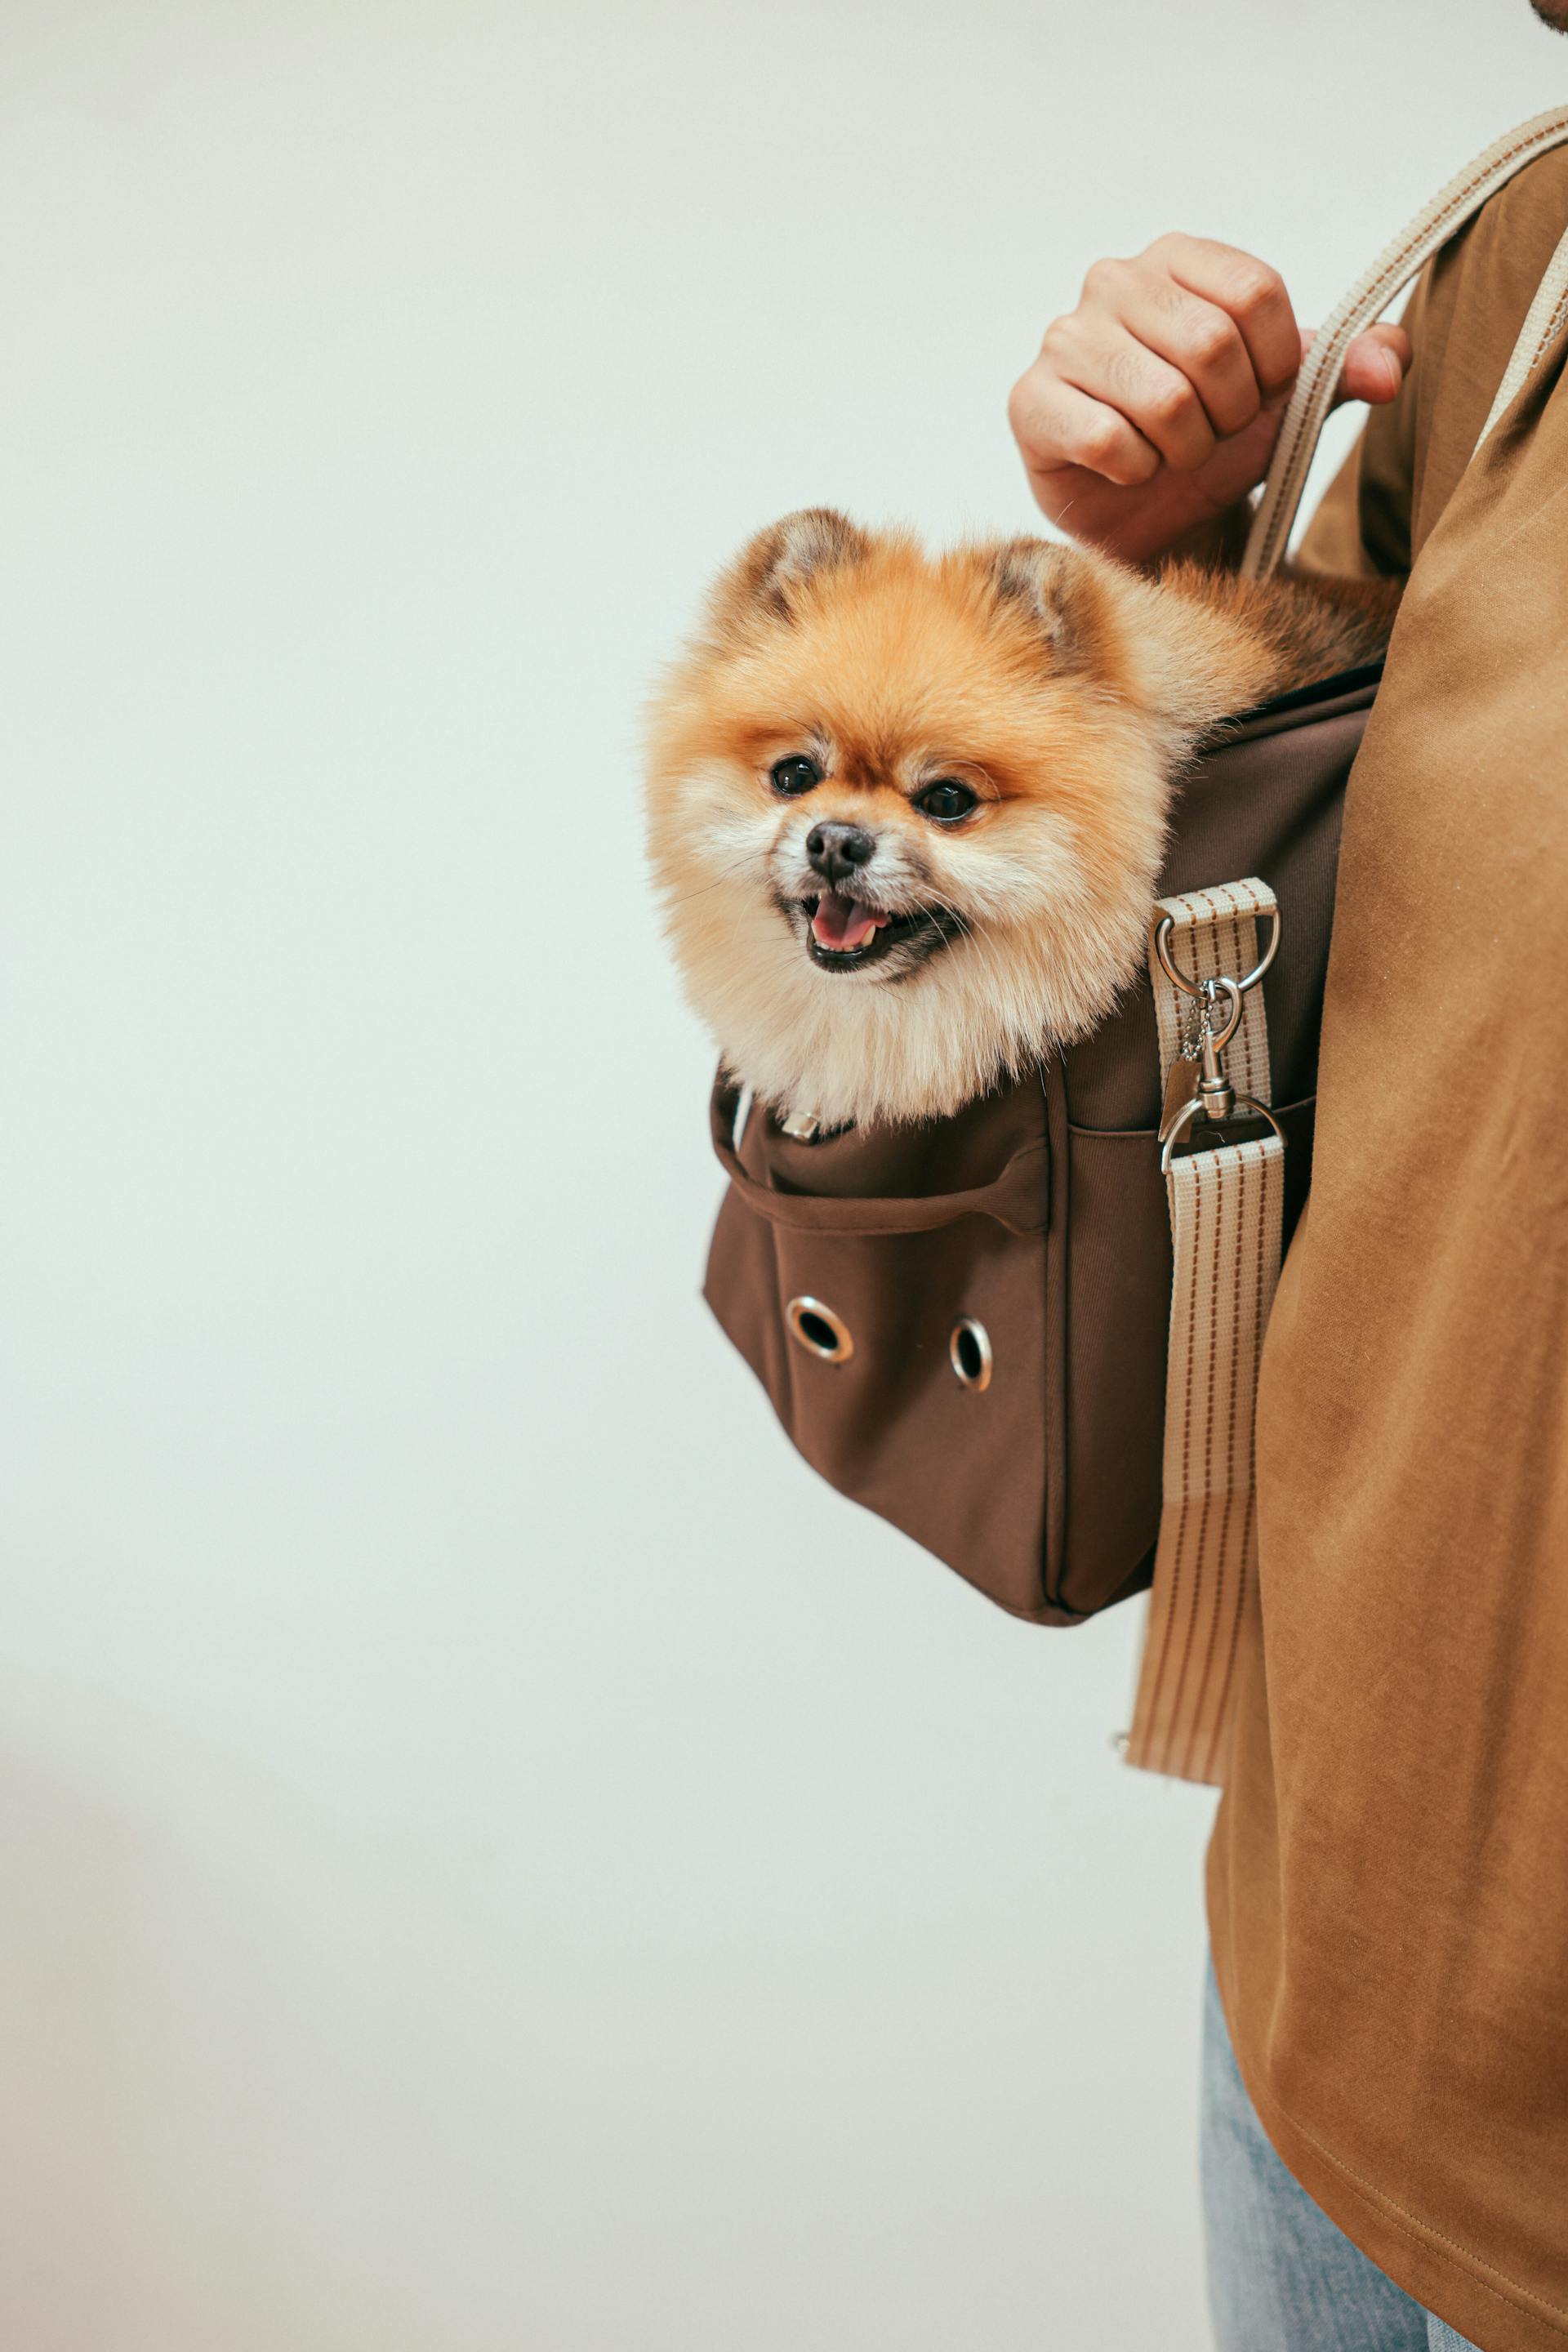 Una persona lleva un perro en una bolsa | Fuente: Pexels